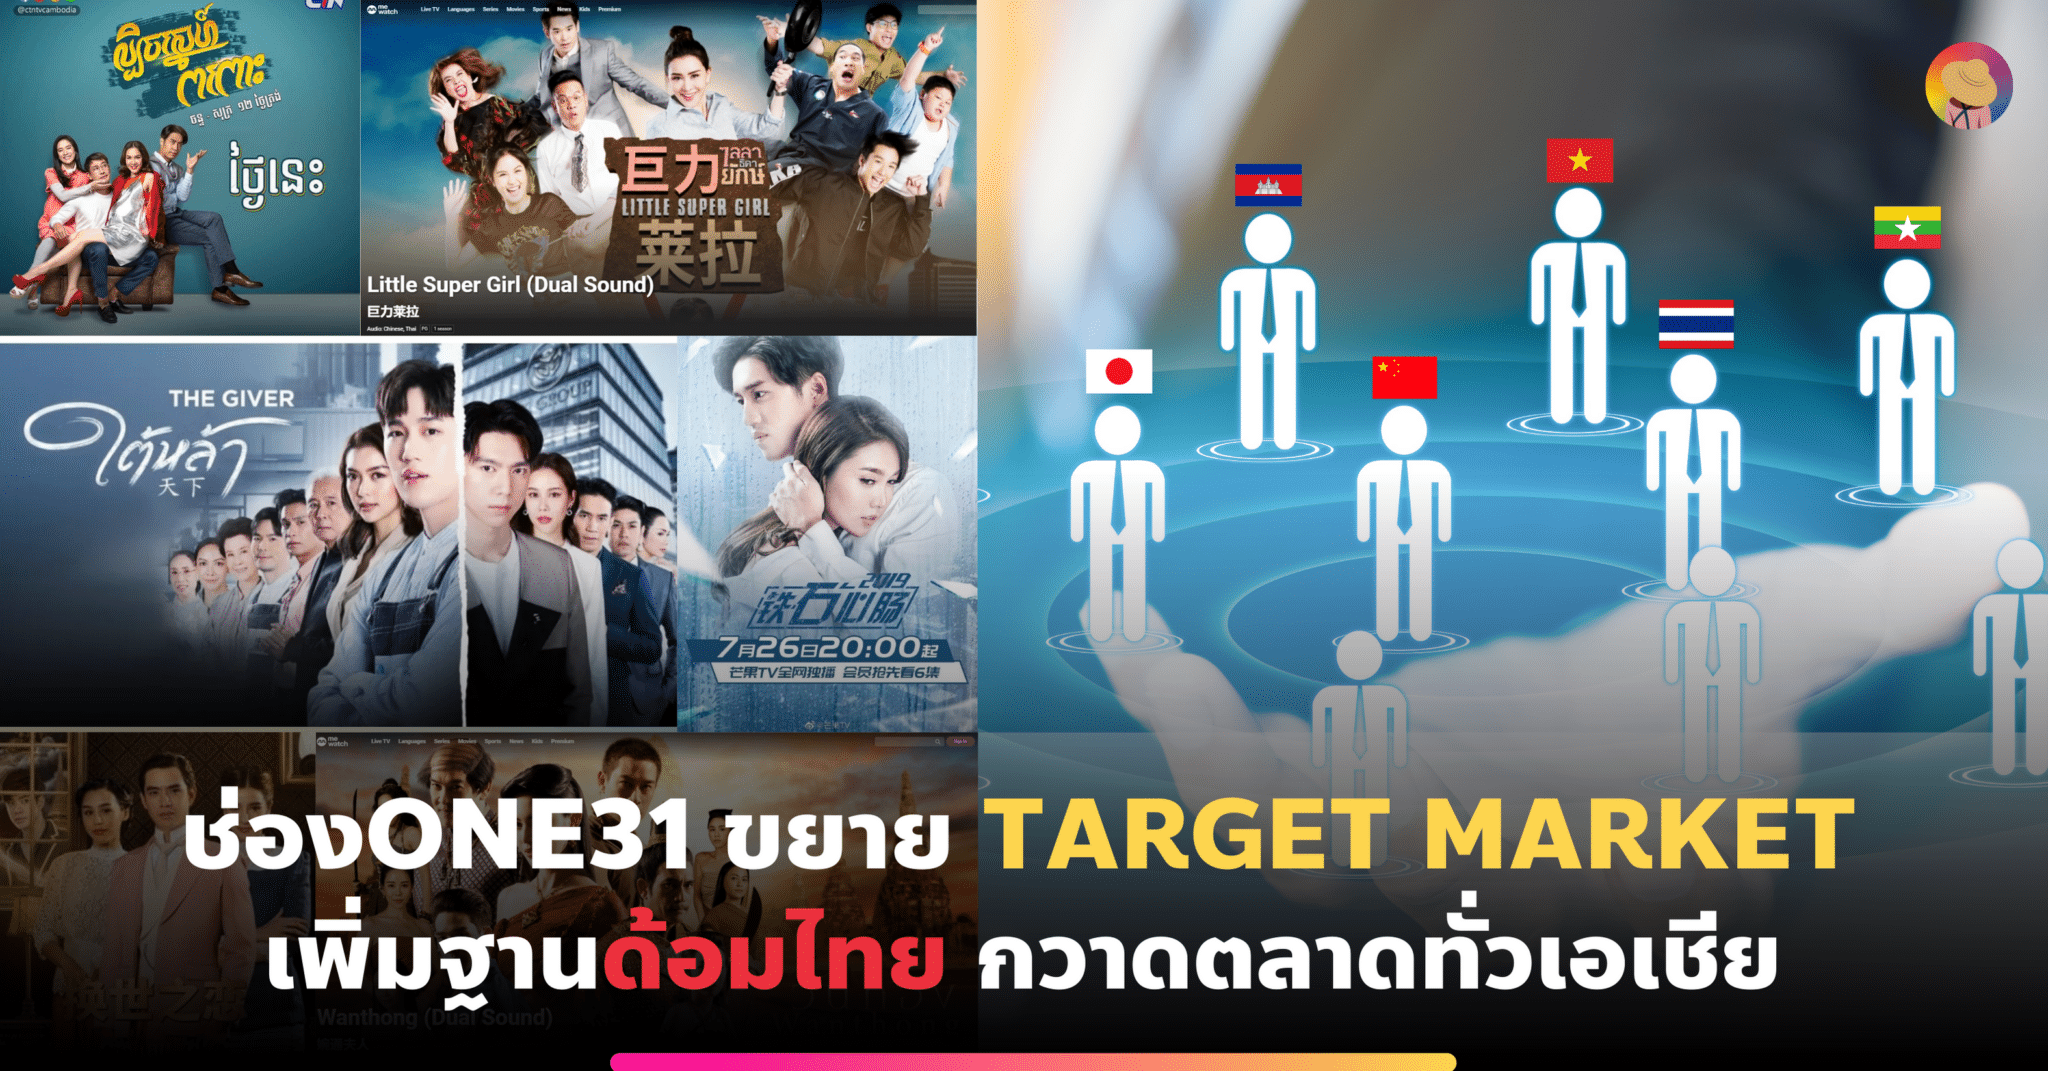 ช่องone31 ขยาย Target Market เพิ่มฐานด้อมไทย กวาดตลาดทั่วเอเชีย